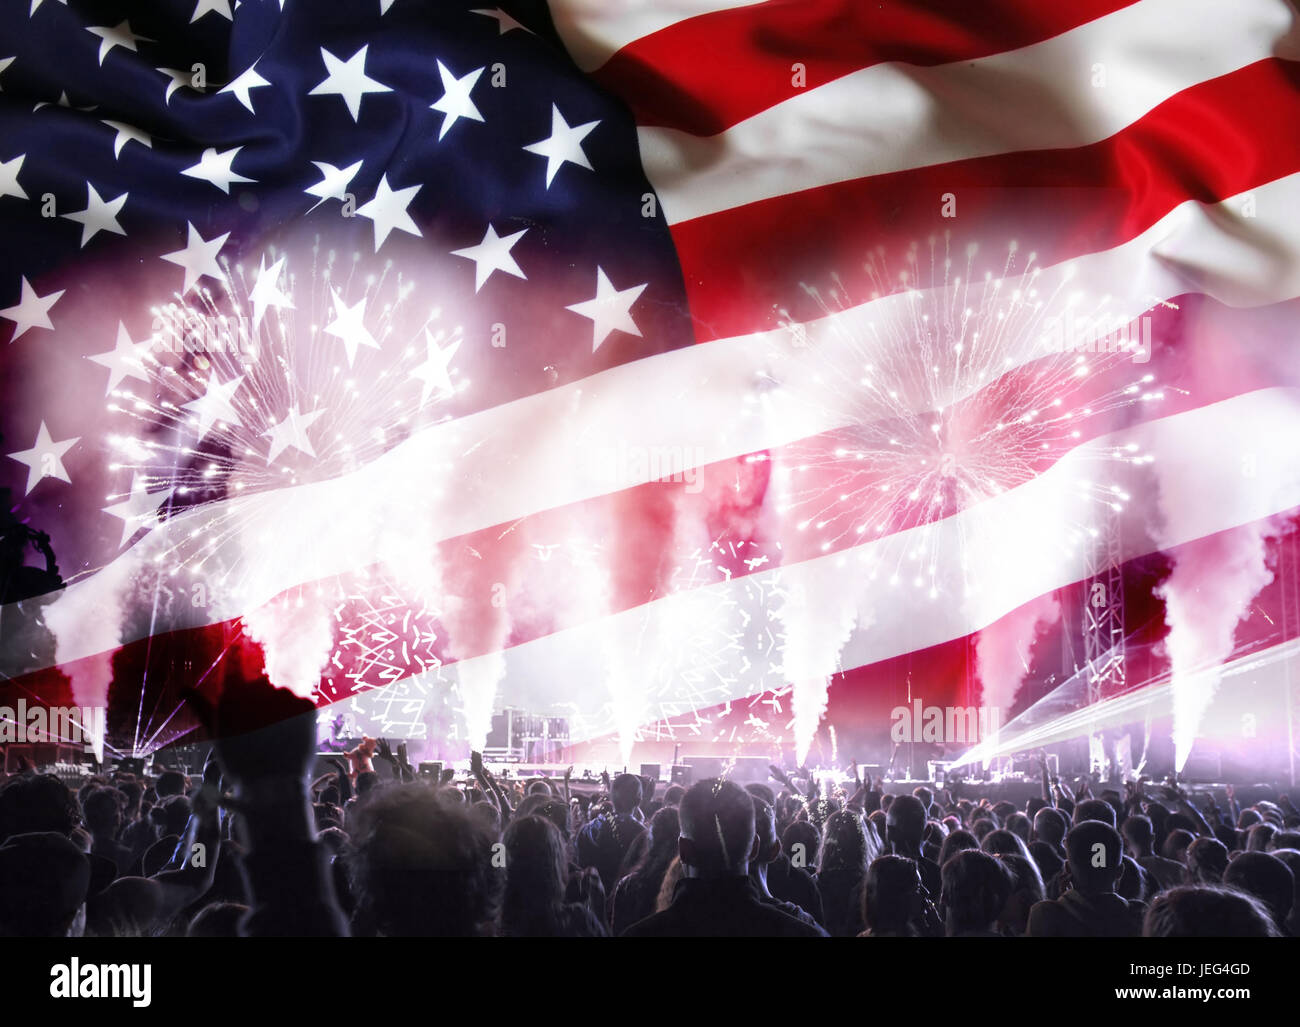 Menschenmenge feiert Unabhängigkeitstag. Vereinigte Staaten von Amerika-USA-Flagge mit Feuerwerk Hintergrund für 4. Juli Stockfoto